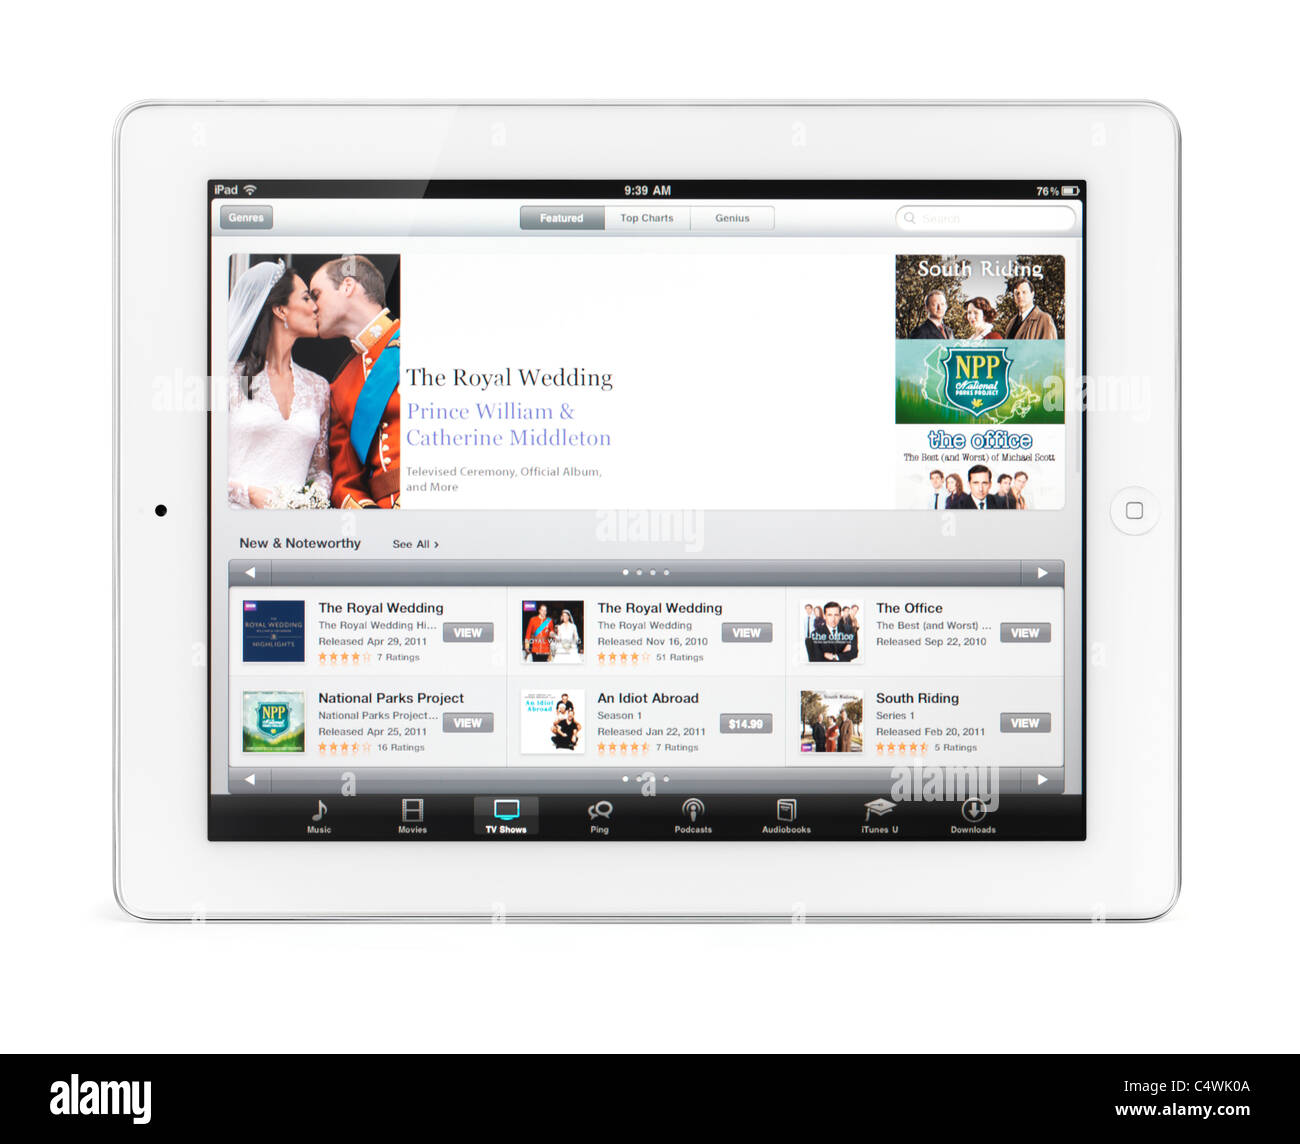 Apple iPad 2 Tablet-Computer mit iTunes TV shows mit der königlichen Hochzeit auf dem Display. Isoliert auf weißem Hintergrund. Stockfoto